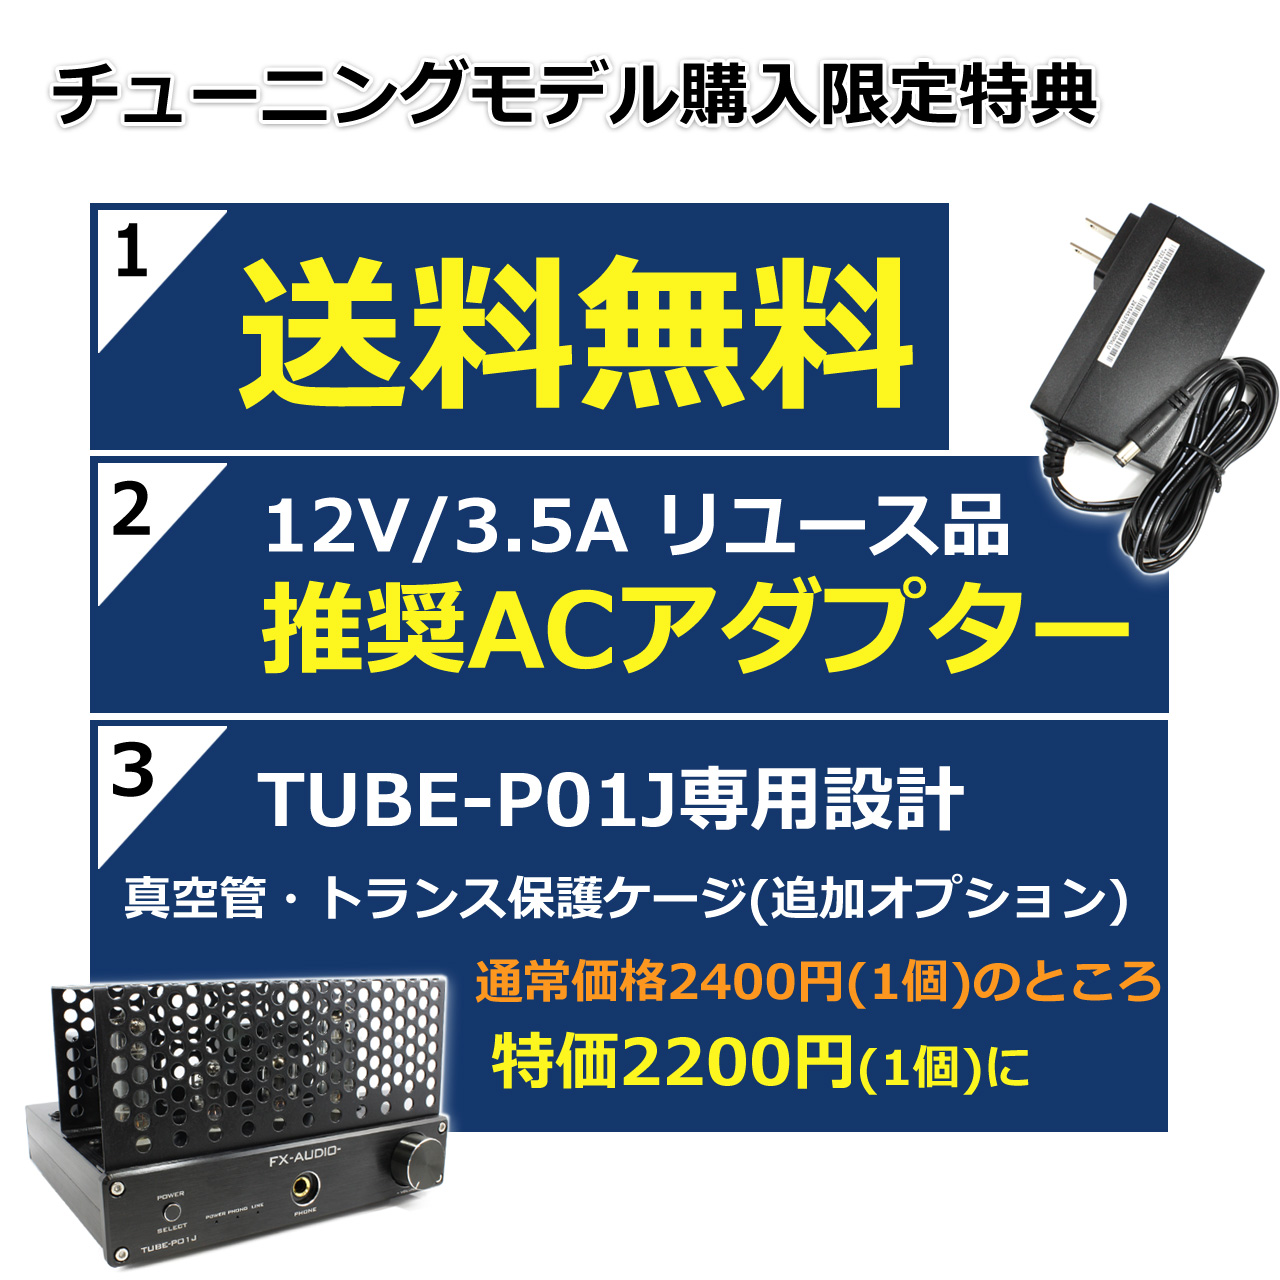 [即納]FX-AUDIO- TUBE-P01J[ブラック]【チューニングモデル】シングルエンド純A級 真空管プリメインアンプ